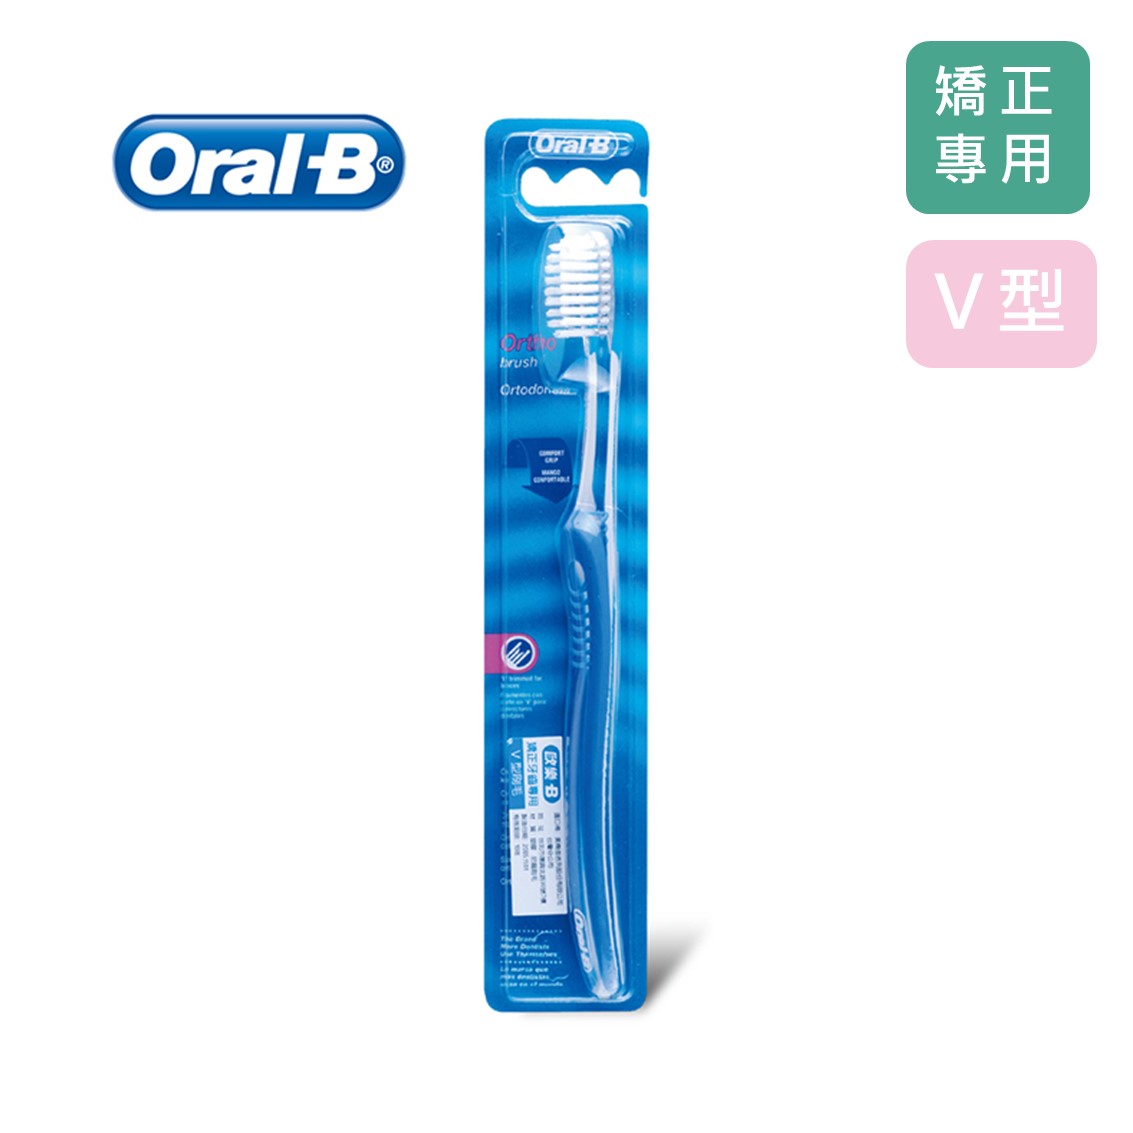 歐樂B Oral-B 矯正型牙刷 V型刷毛設計 單入 適合戴矯正器 隨機出貨不挑色 公司貨【立赫藥局】